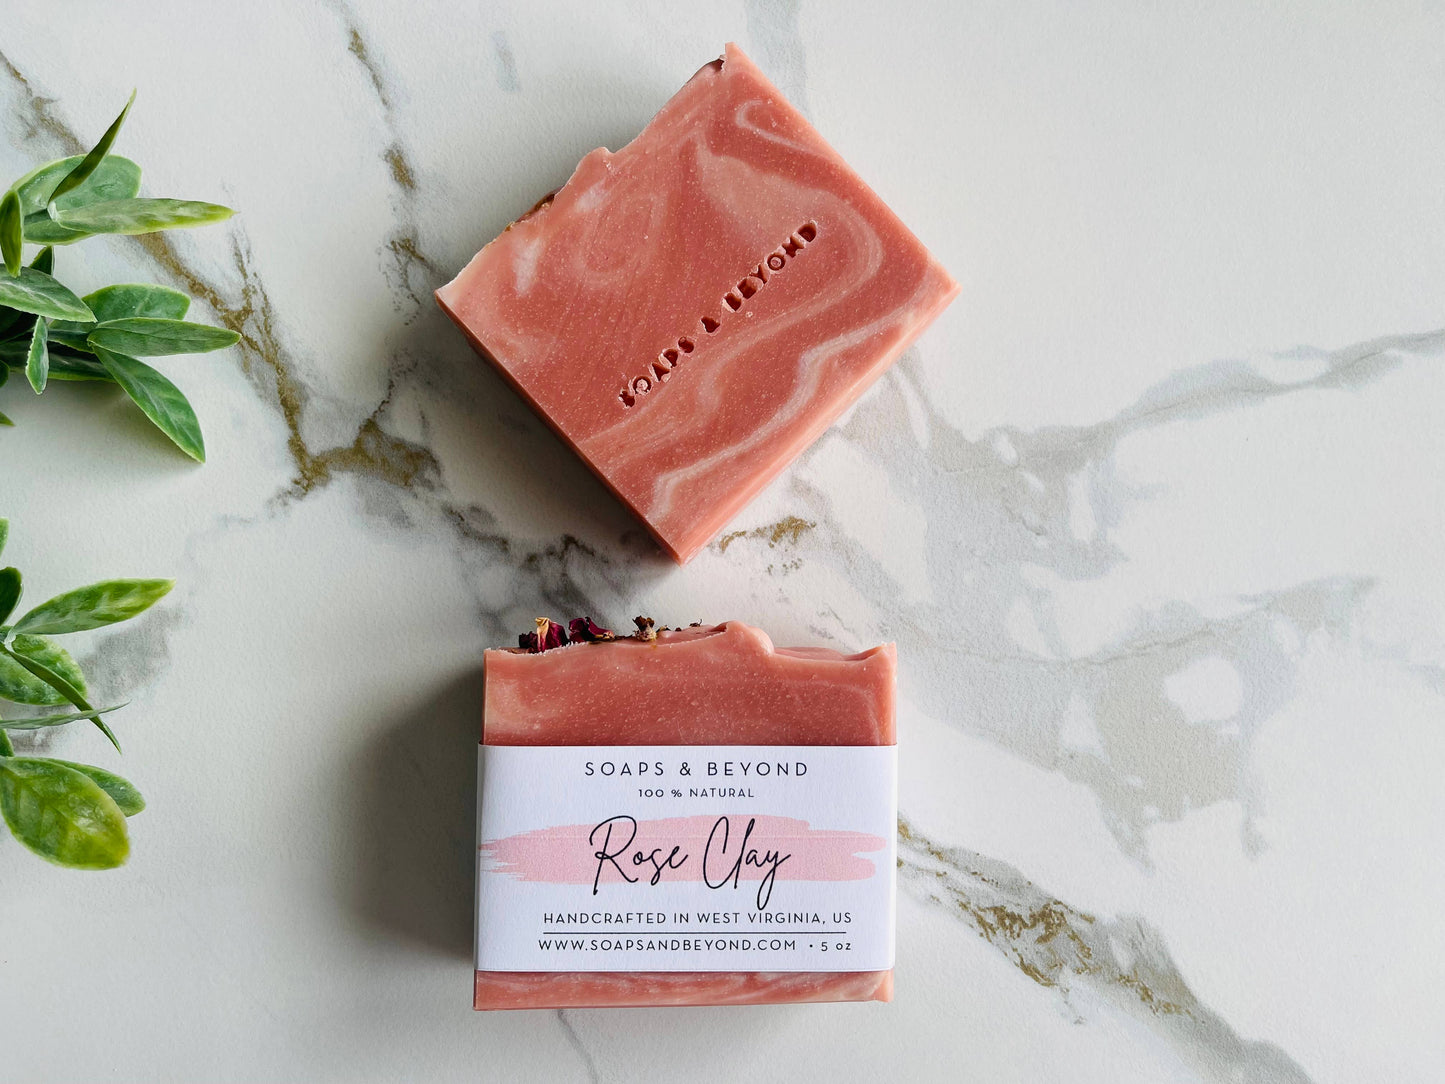 Rose Clay Soap bar 100% Natural.